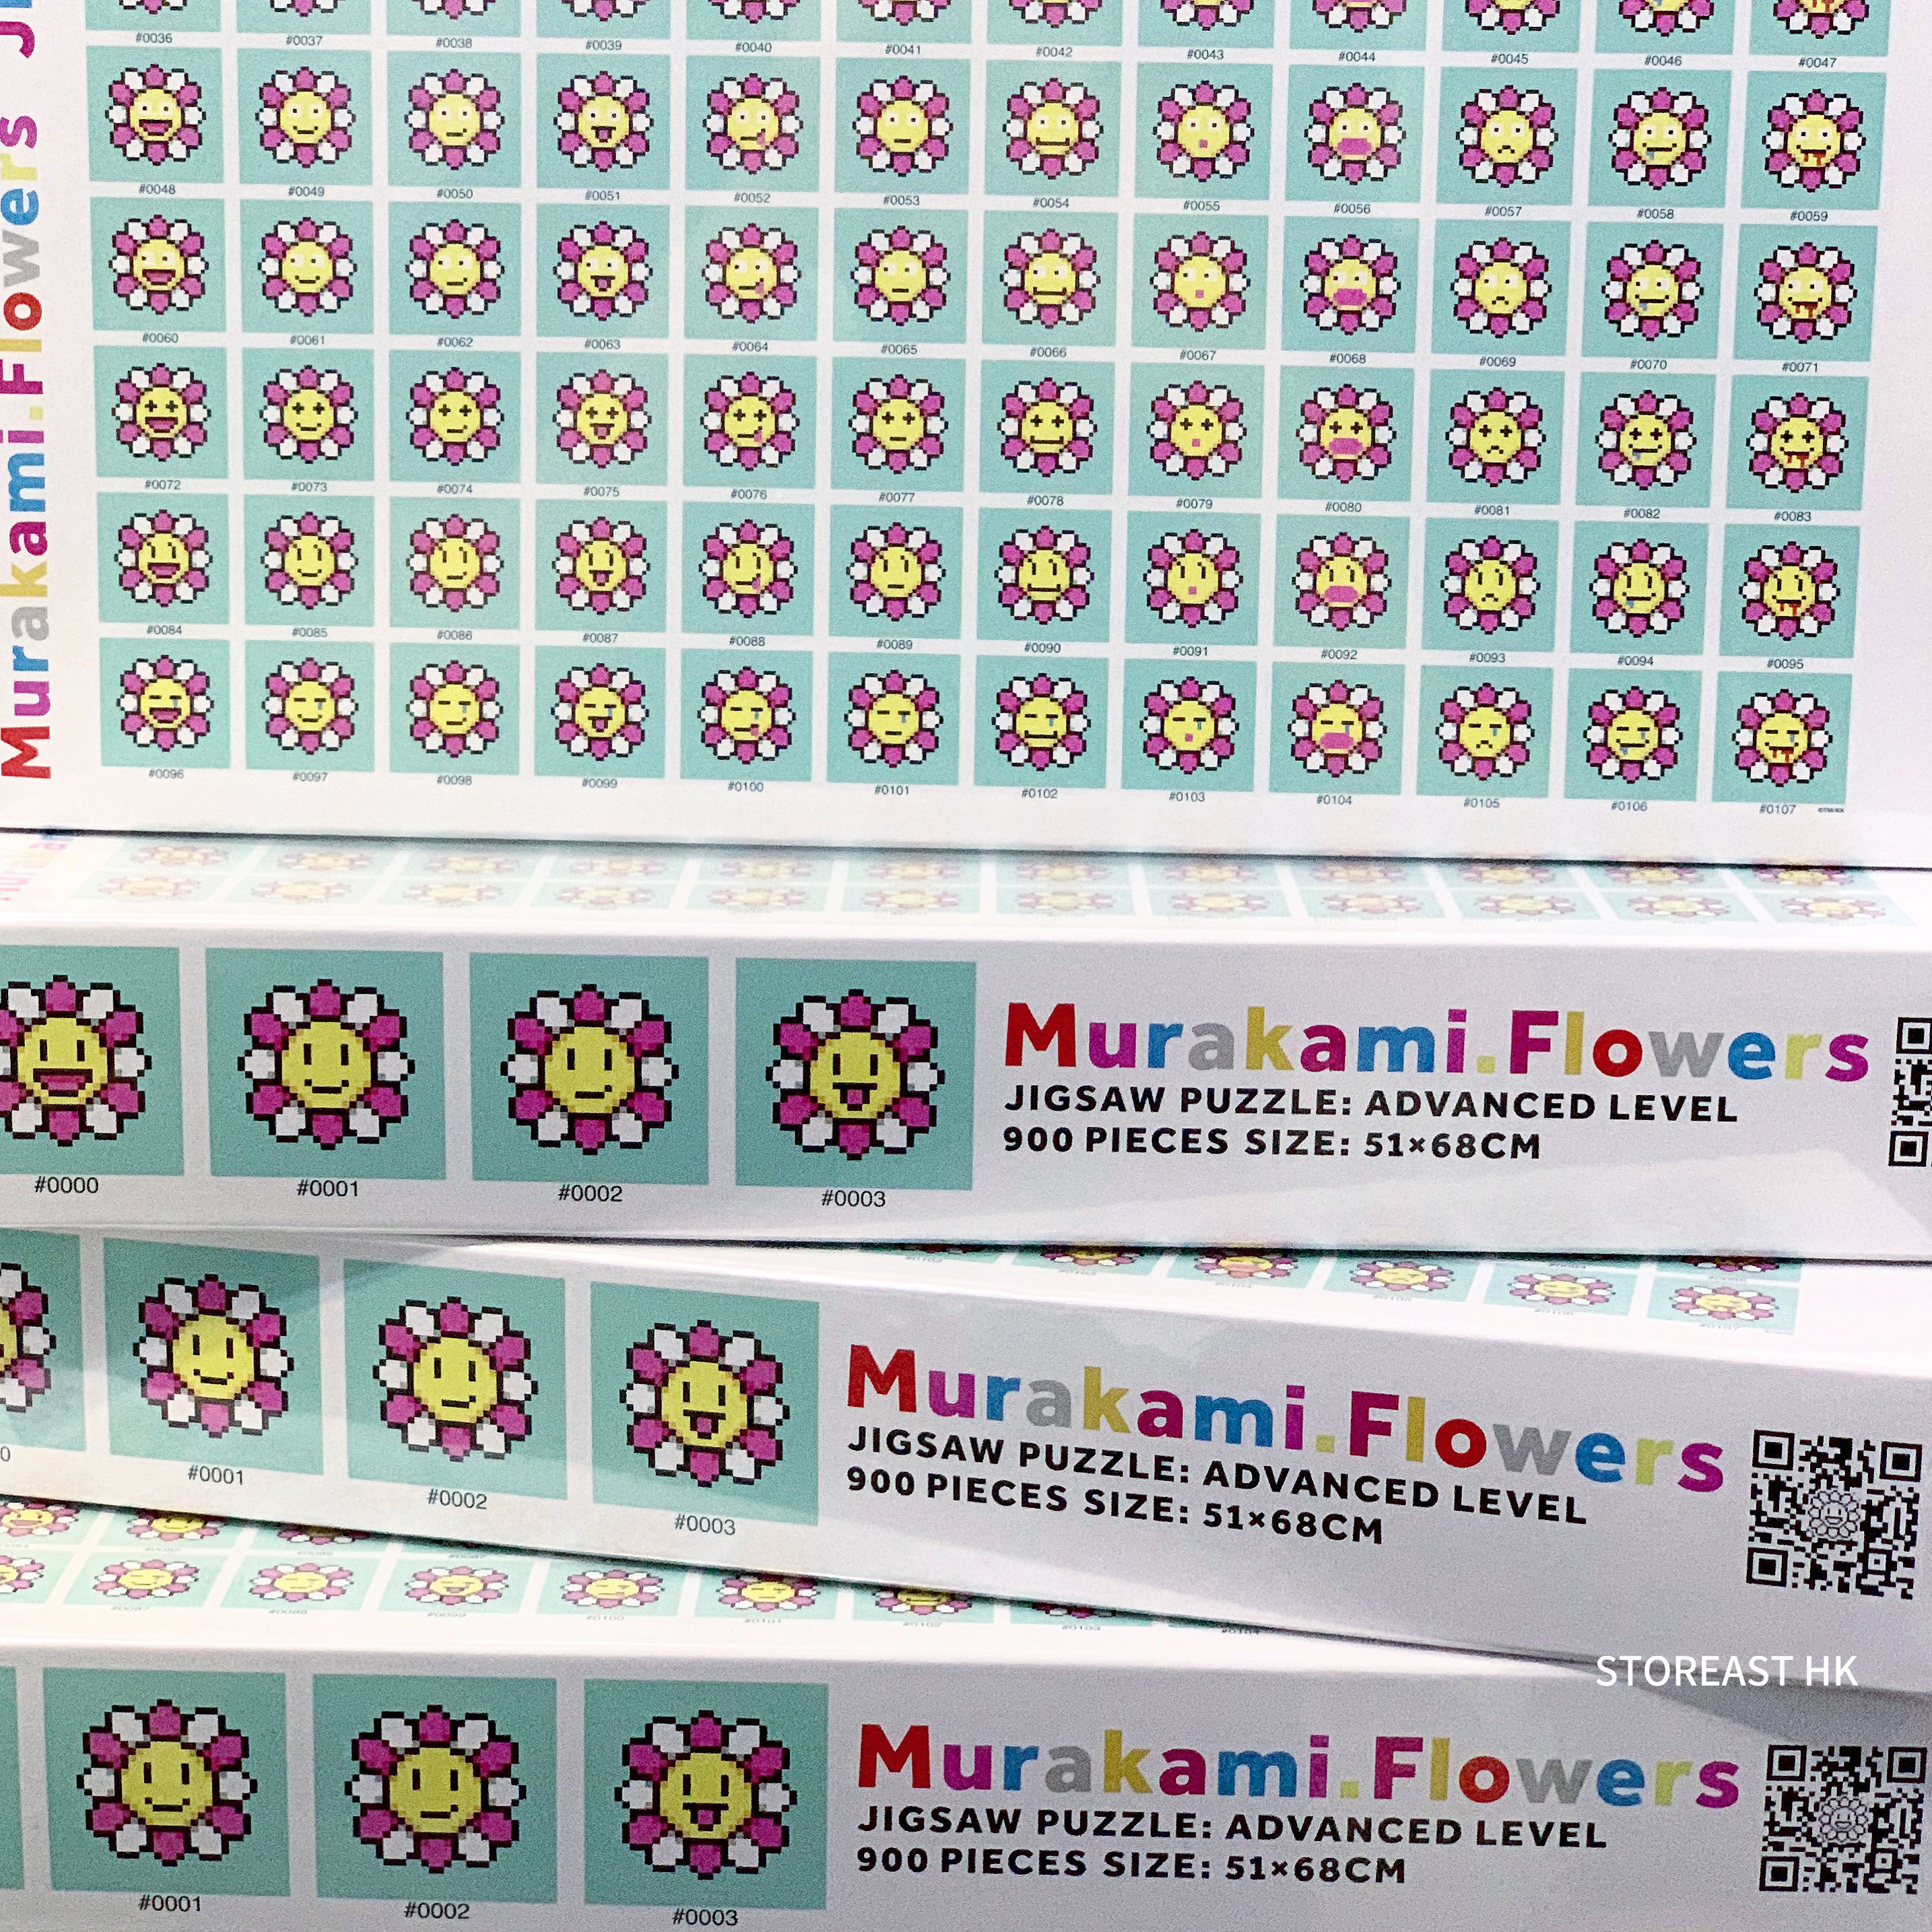 村上隆Jigsaw Puzzle / Murakami.Flowers 拼圖